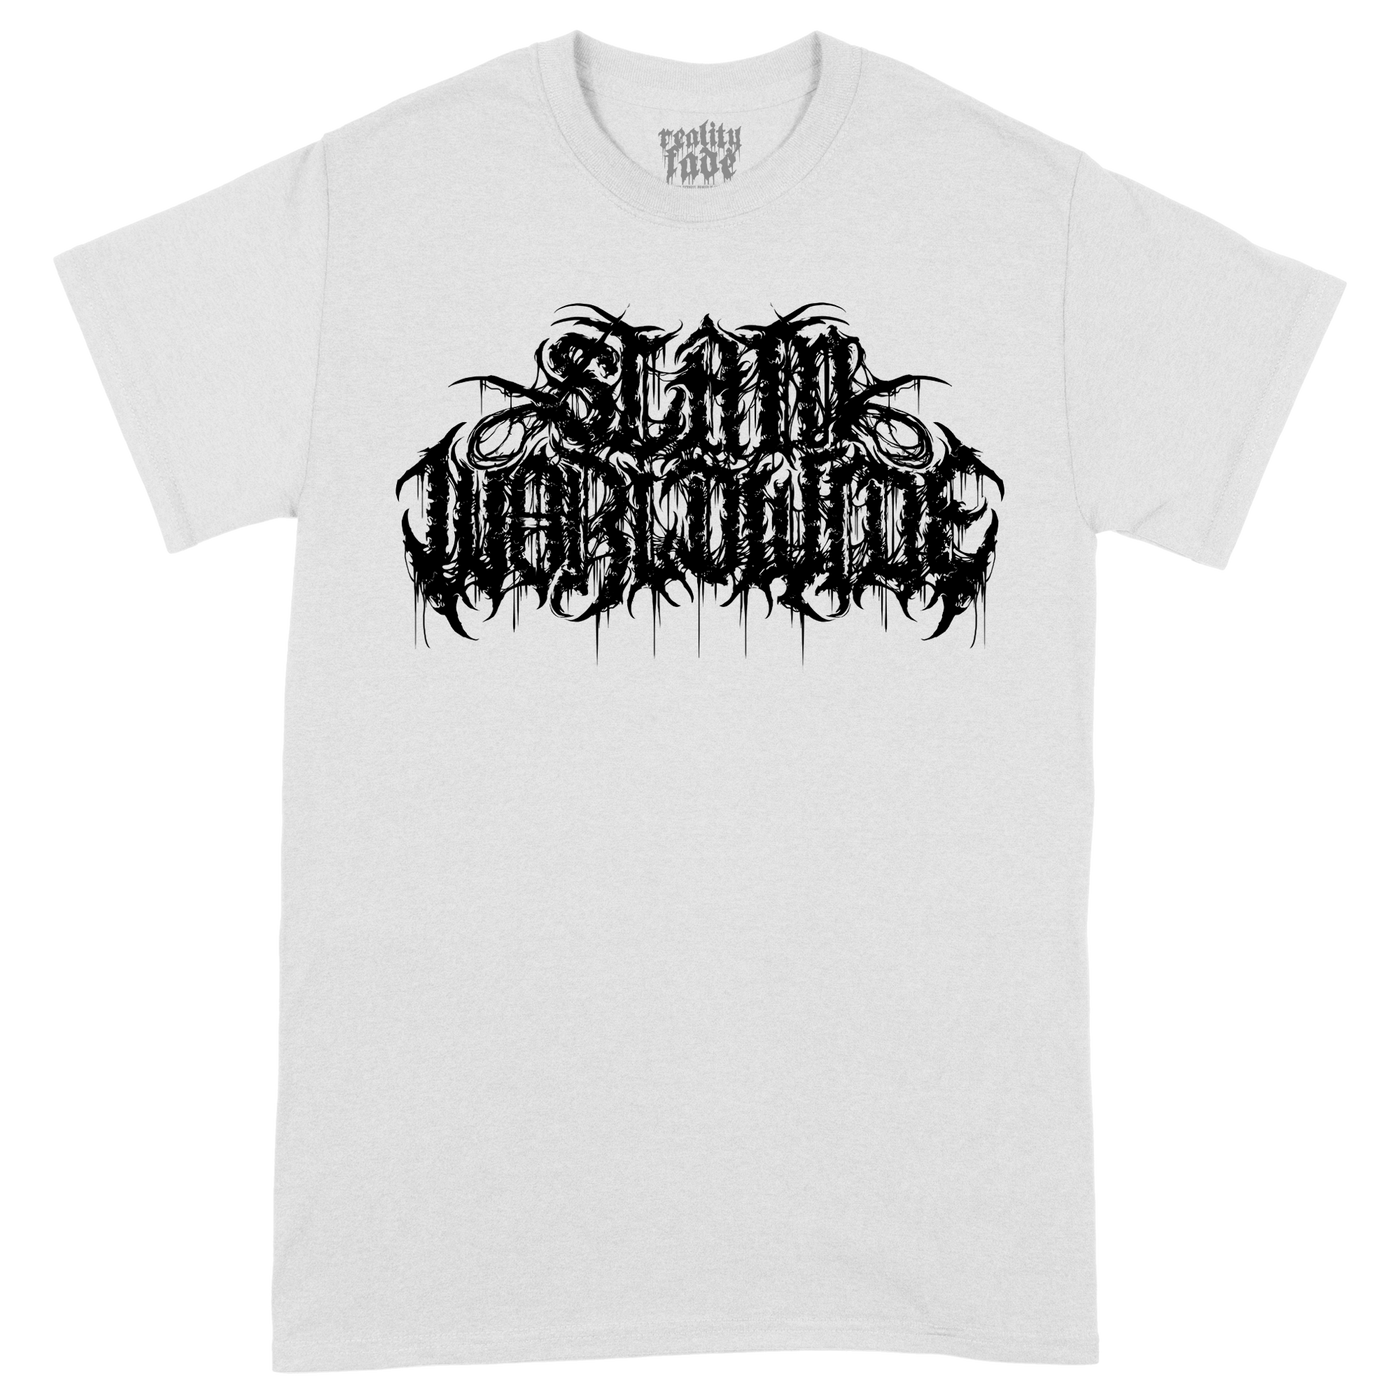 Slam Worldwide Logo White T-Shirt